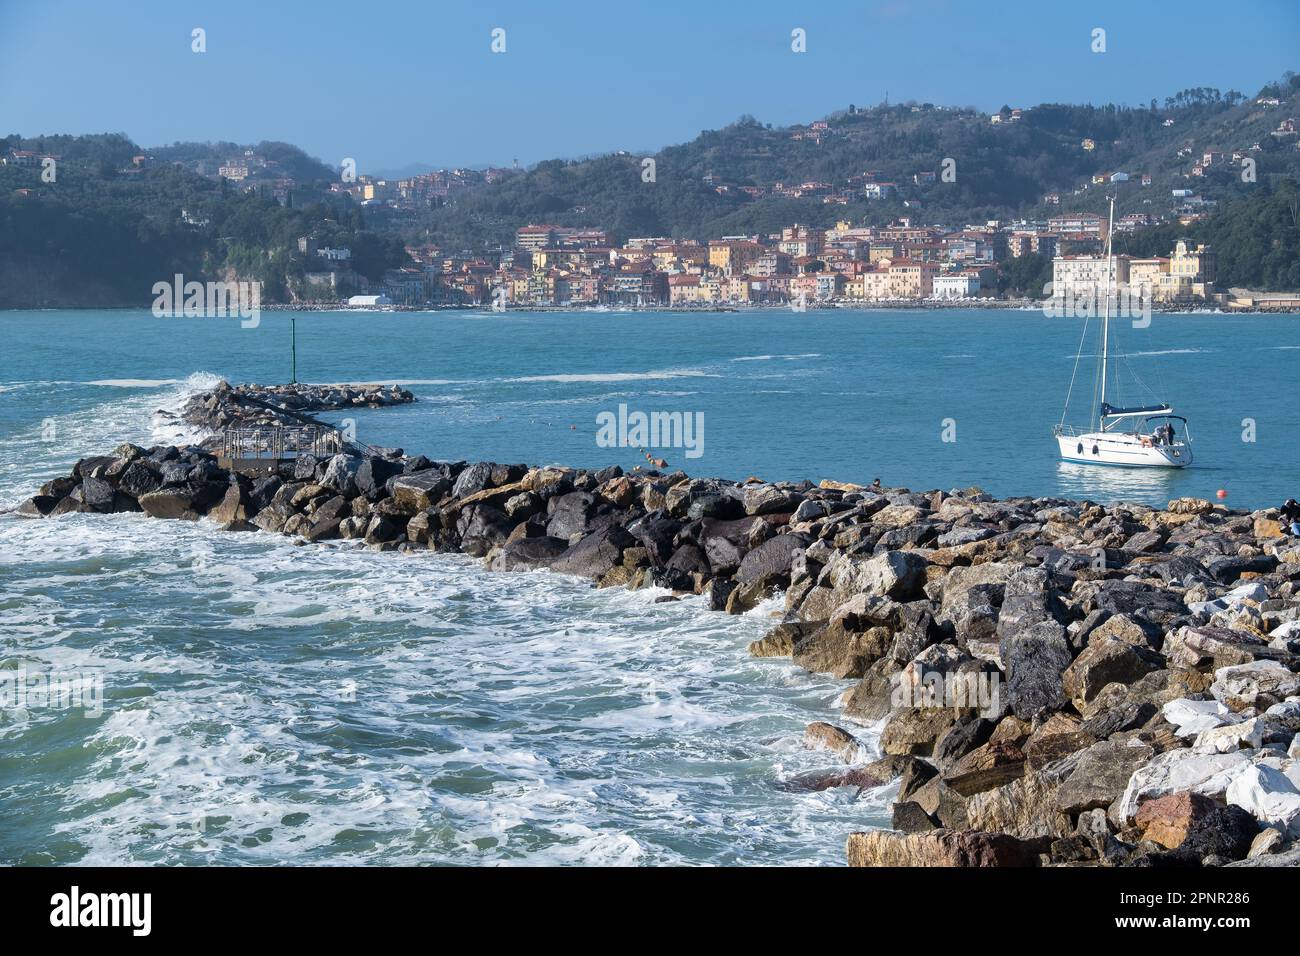 Bateau naviguant dans le port par un homme artificiel de promontoire, Golfo dei Poeti (Golfe des poètes), la Spezia, Lerici, Ligurie, Italie Banque D'Images